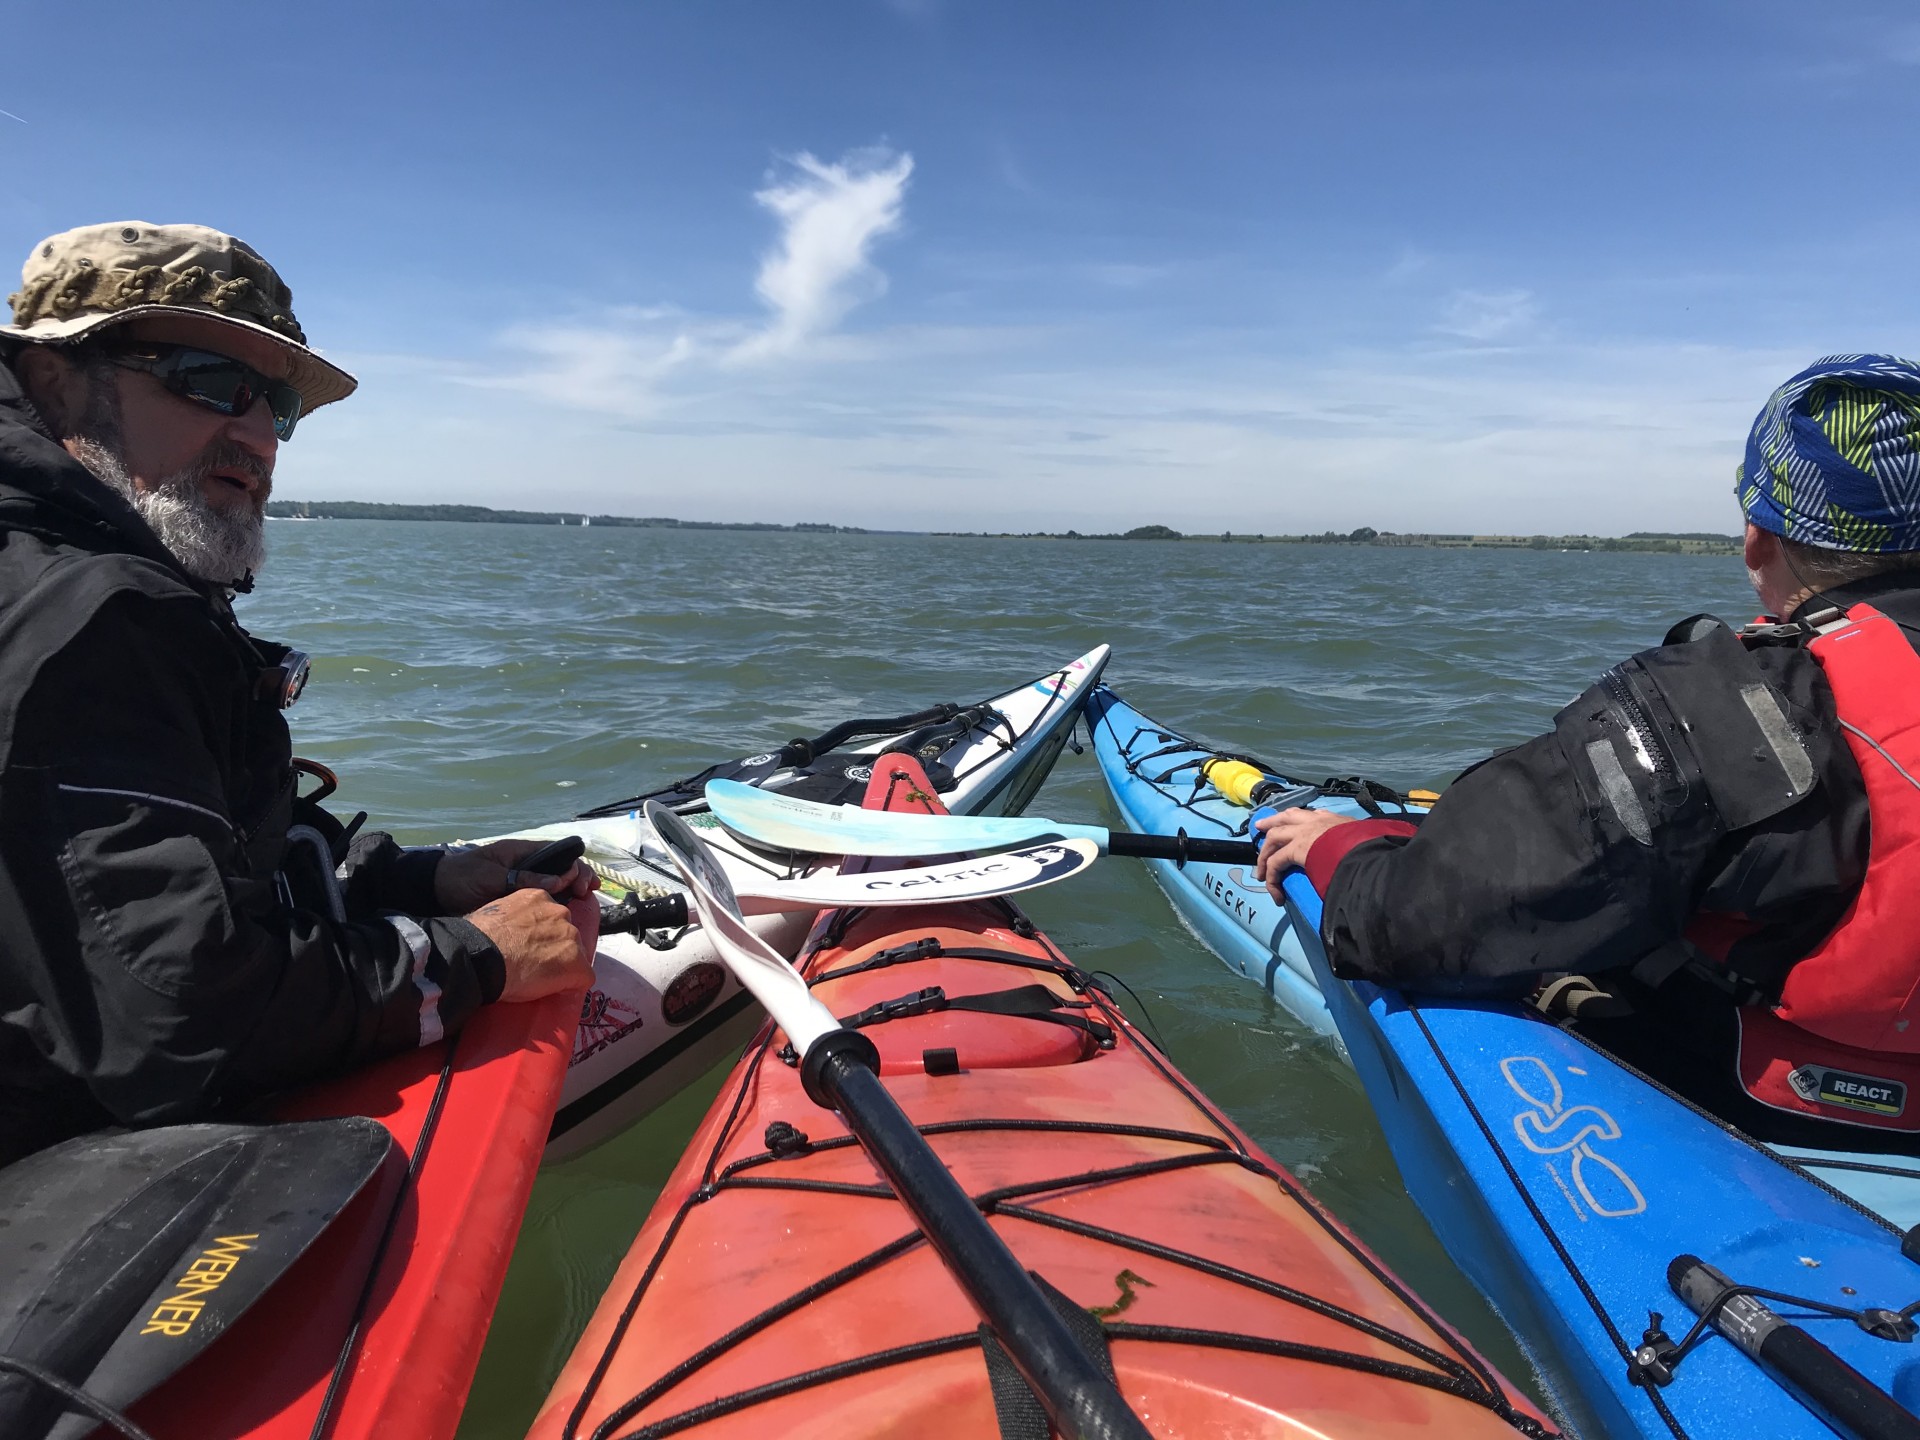 Sea kayakers at sea training skills with NOMAD Sea Kayaking